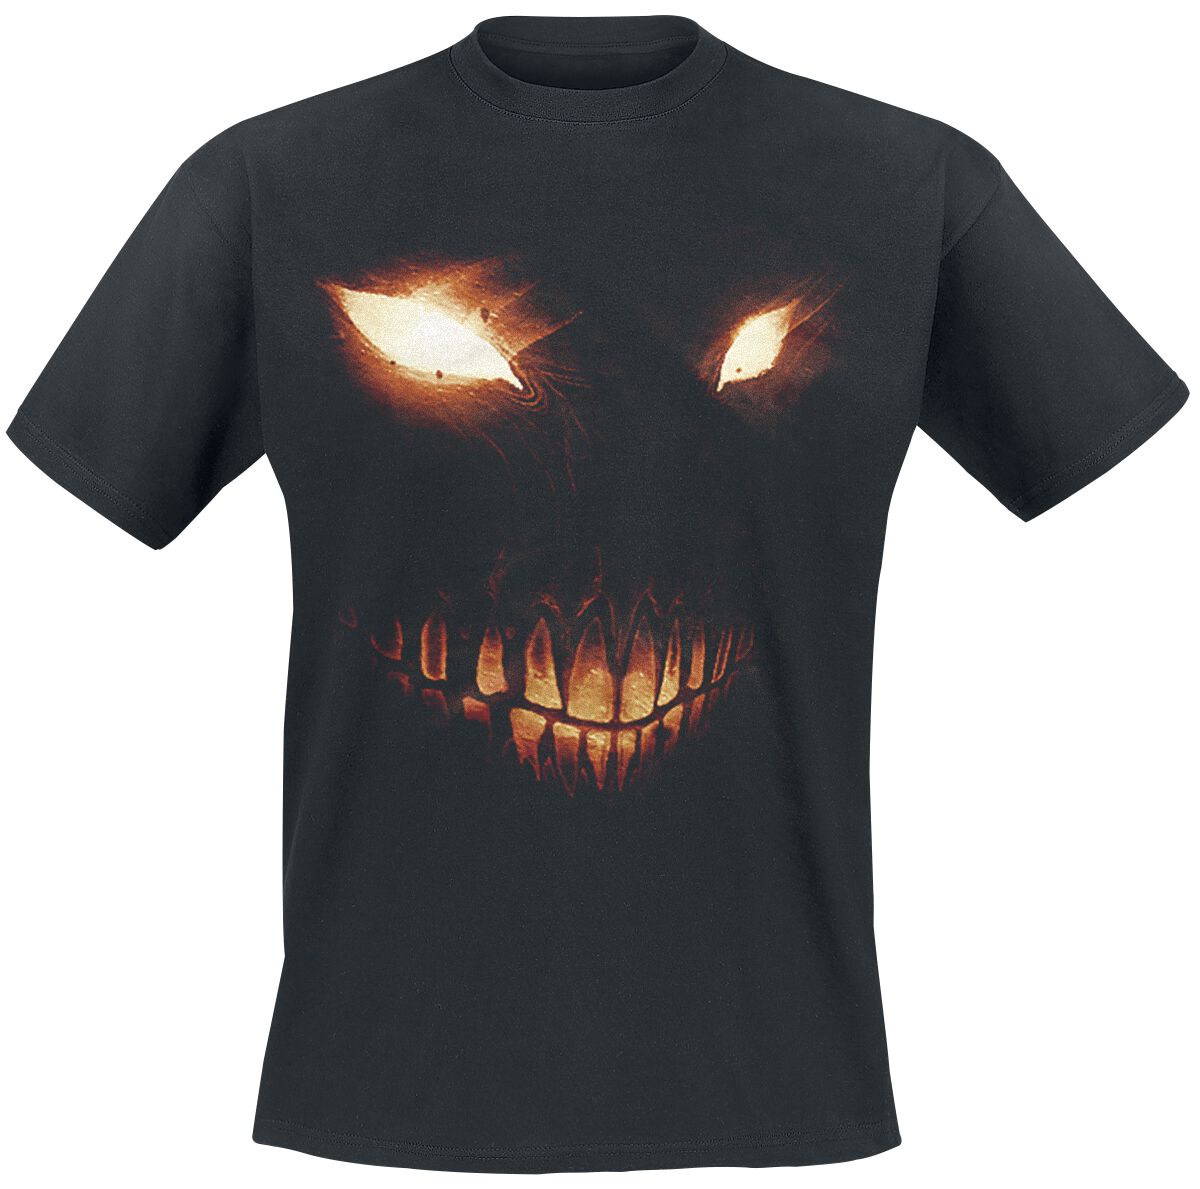 Disturbed T-Shirt - Bright Eyes - L bis 5XL - für Männer - Größe 4XL - schwarz  - Lizenziertes Merchandise!